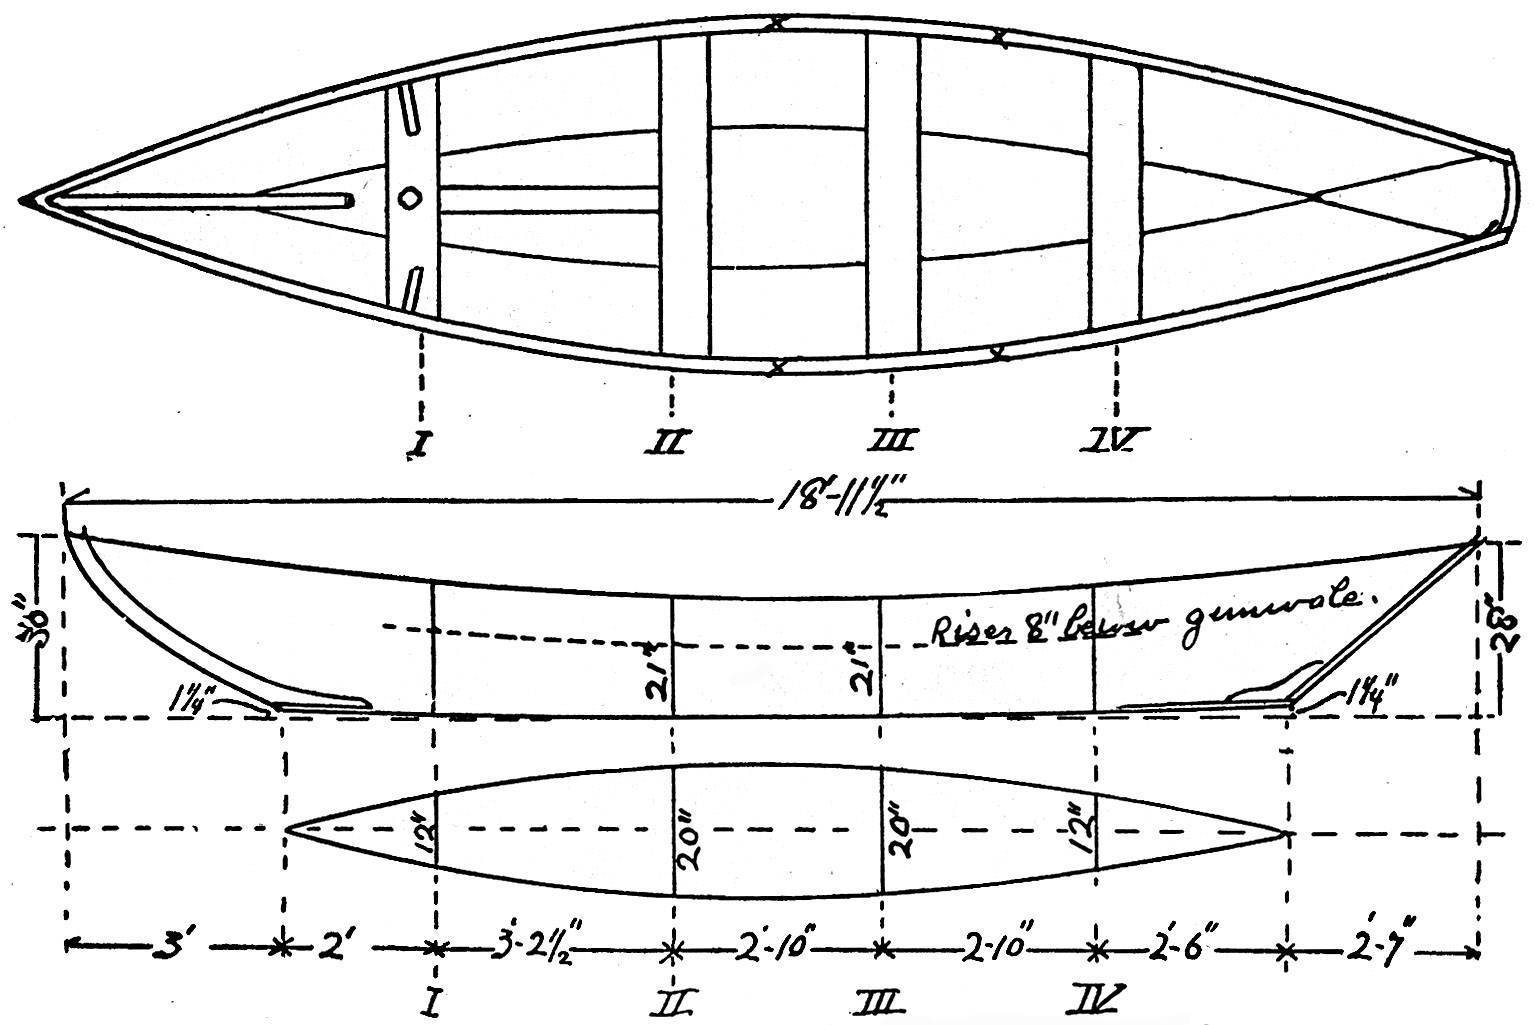 Лодка из одного листа фанеры - проект, чертежи, эскизы и описание технологии изготовления лодки из одного листа фанеры